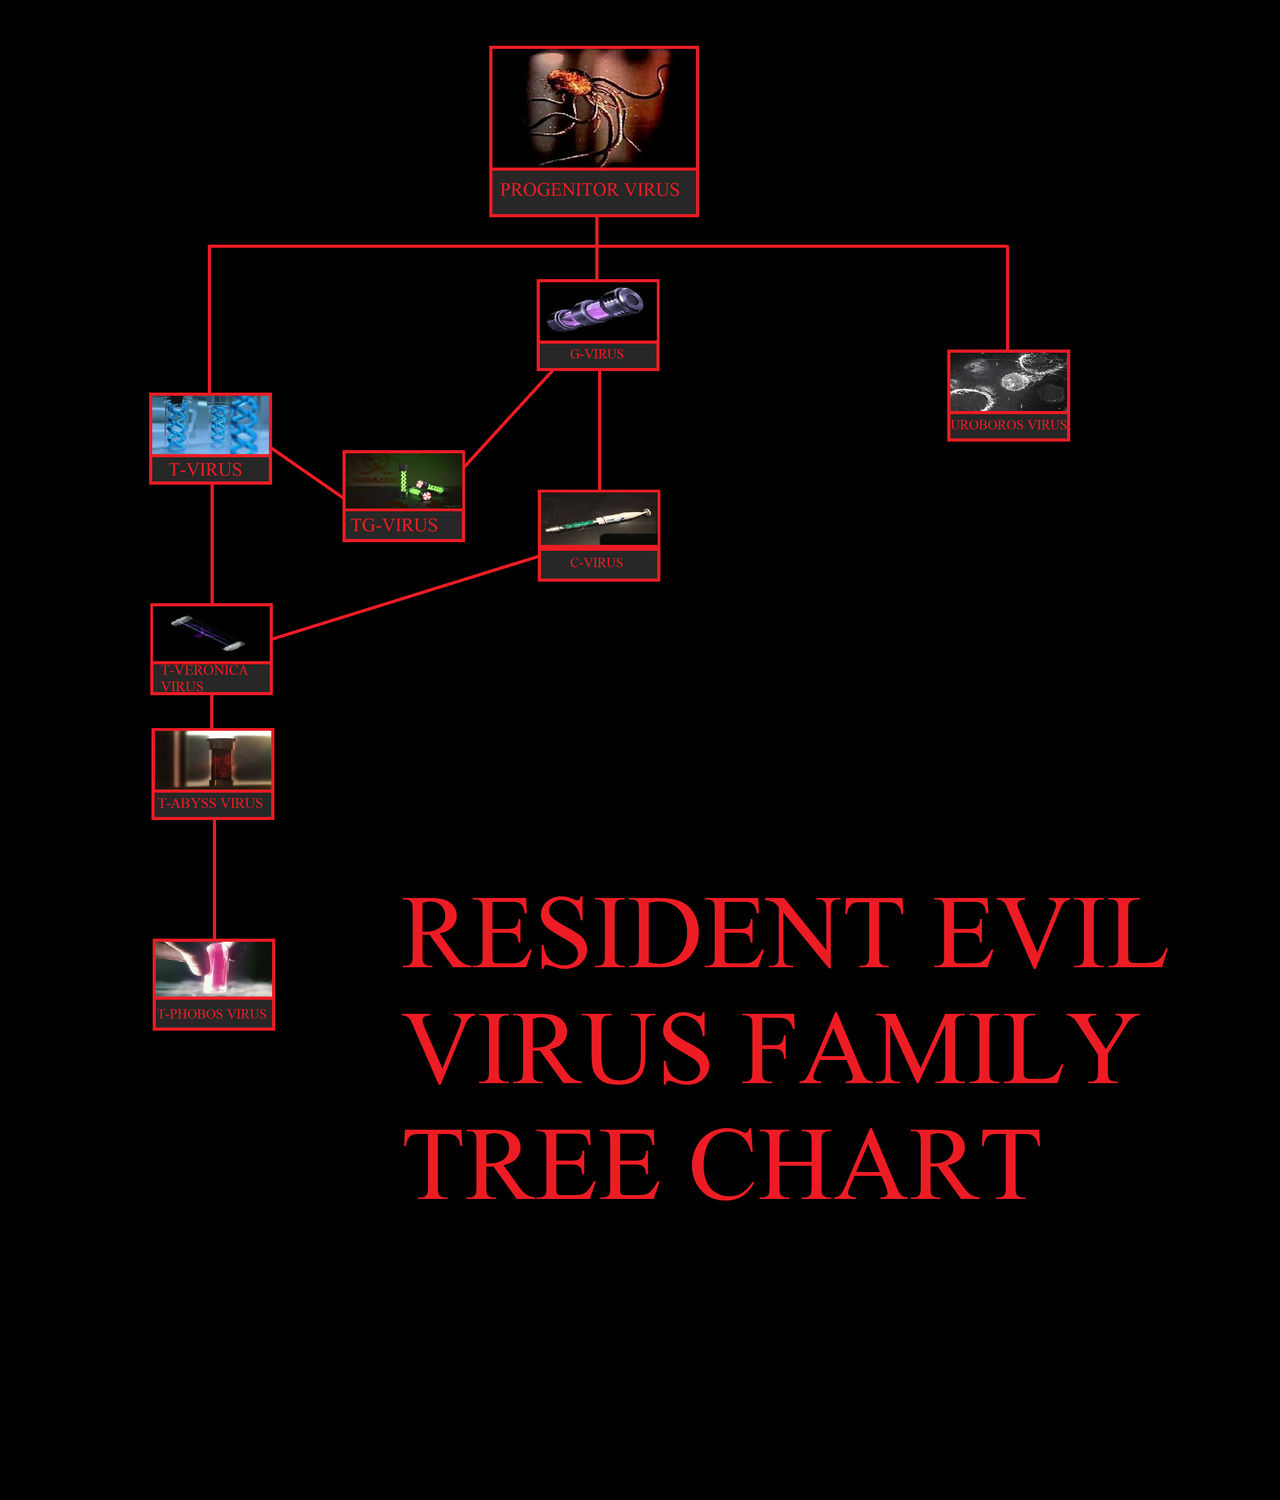 Resident Evil Virus Family Tree Chart By Krptoncross On Deviantart